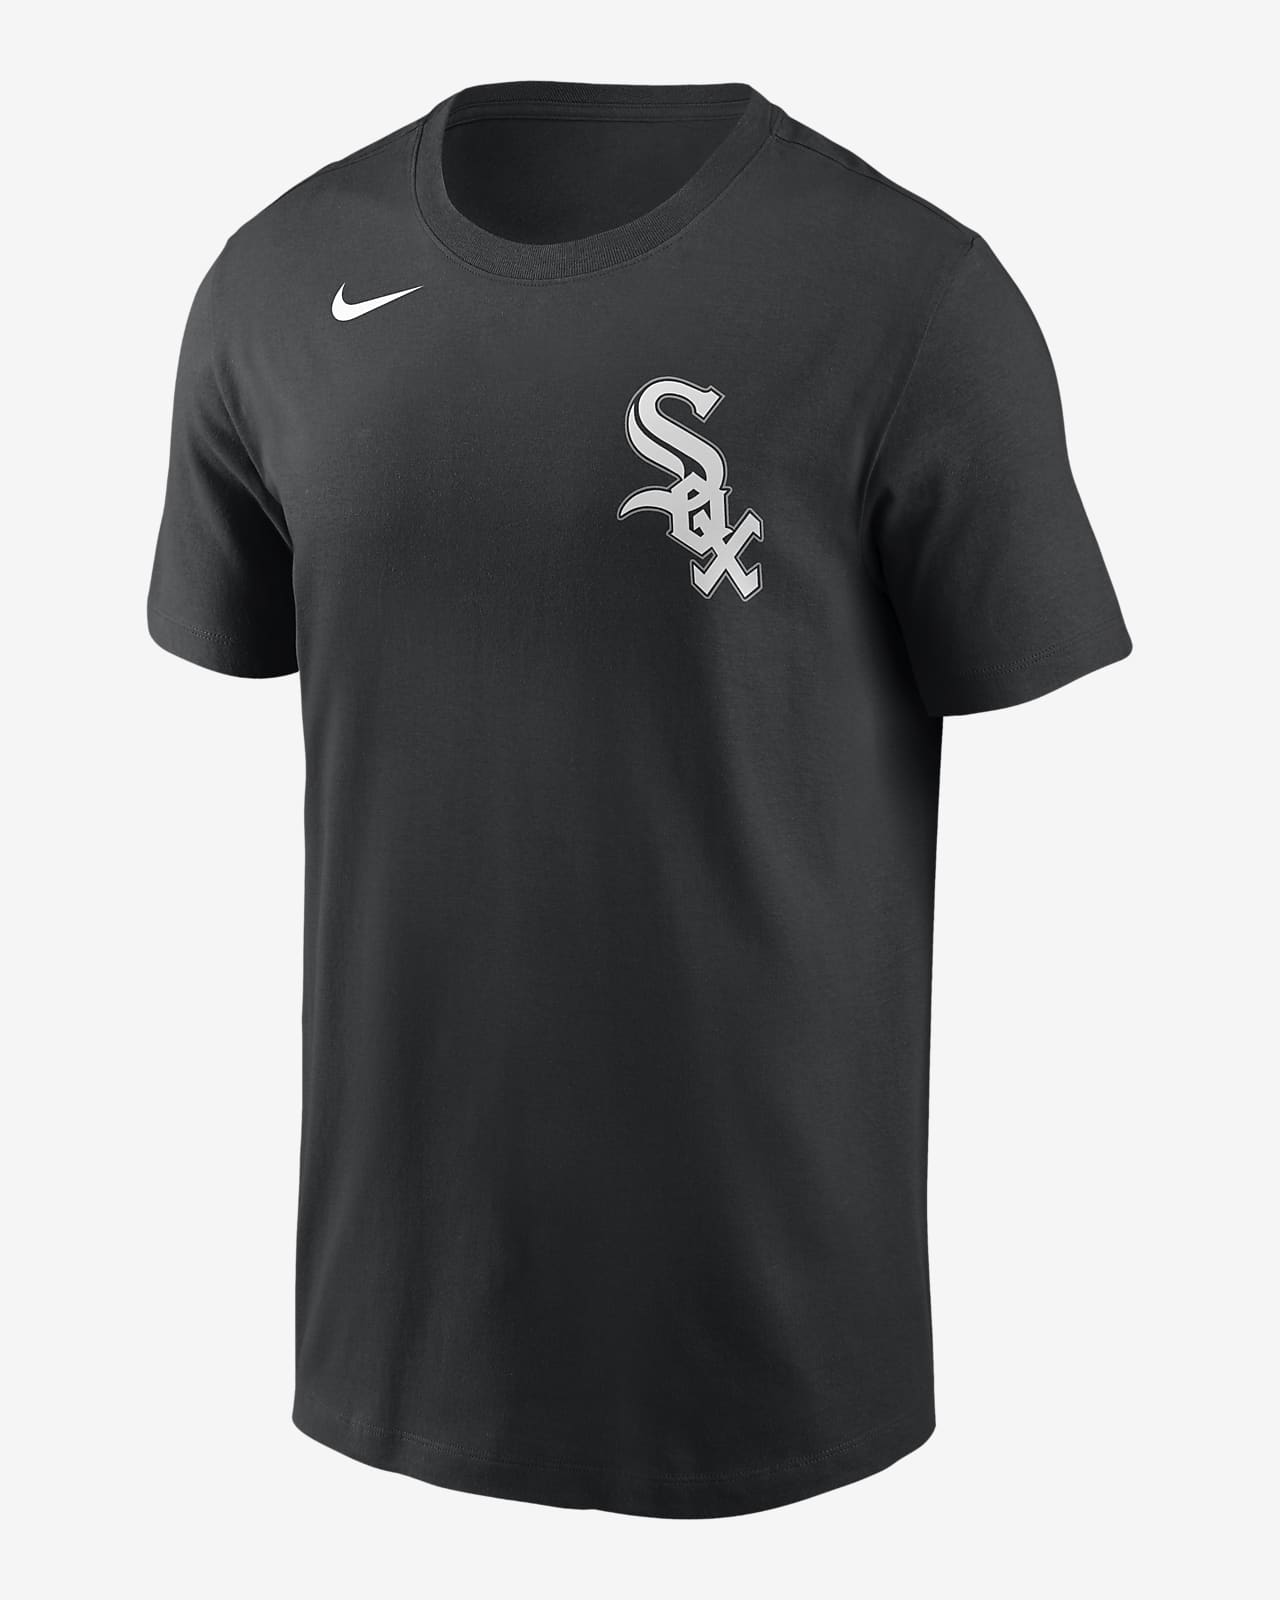 MLB Chicago White Sox (Yoan Moncada) Men's T-Shirt. Nike.com